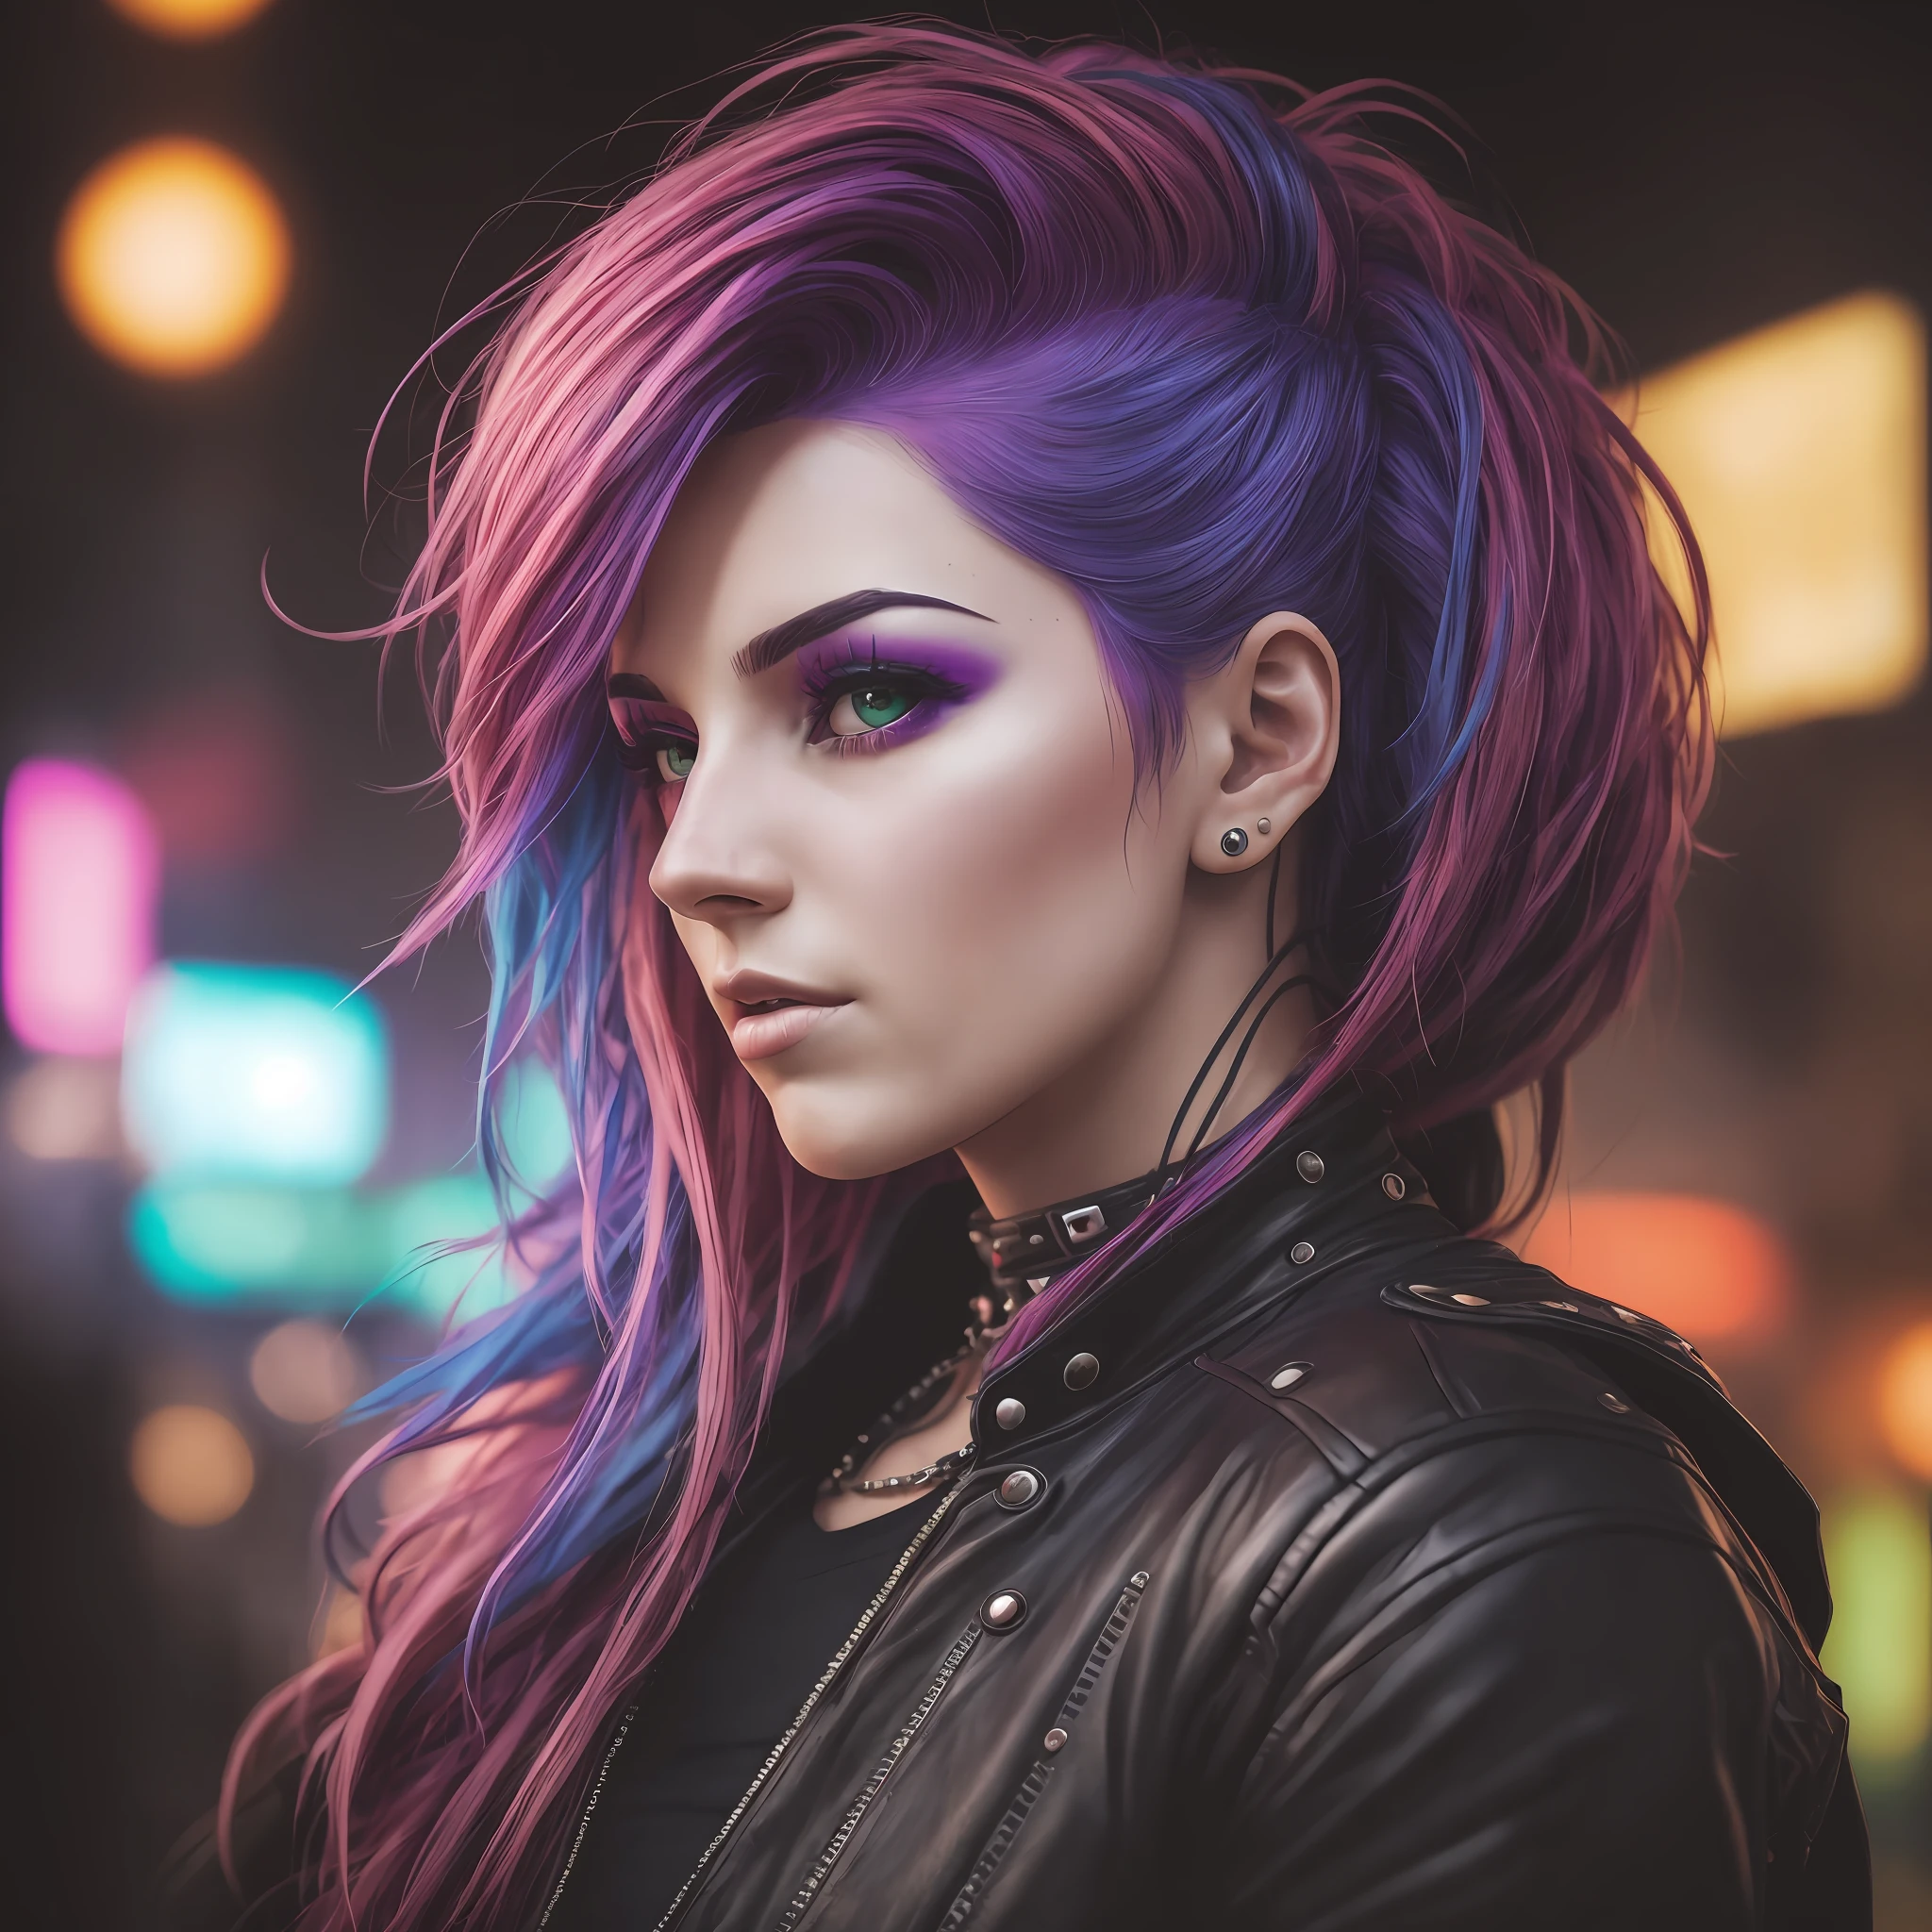 A woman with colorFul hair style cyberpunk, sharp Facial Features, cinematográfico, lente de 35 mm, F/1.8, Iluminación destacada, iluminación global –uplight –v 4 -imagine --auto --s2